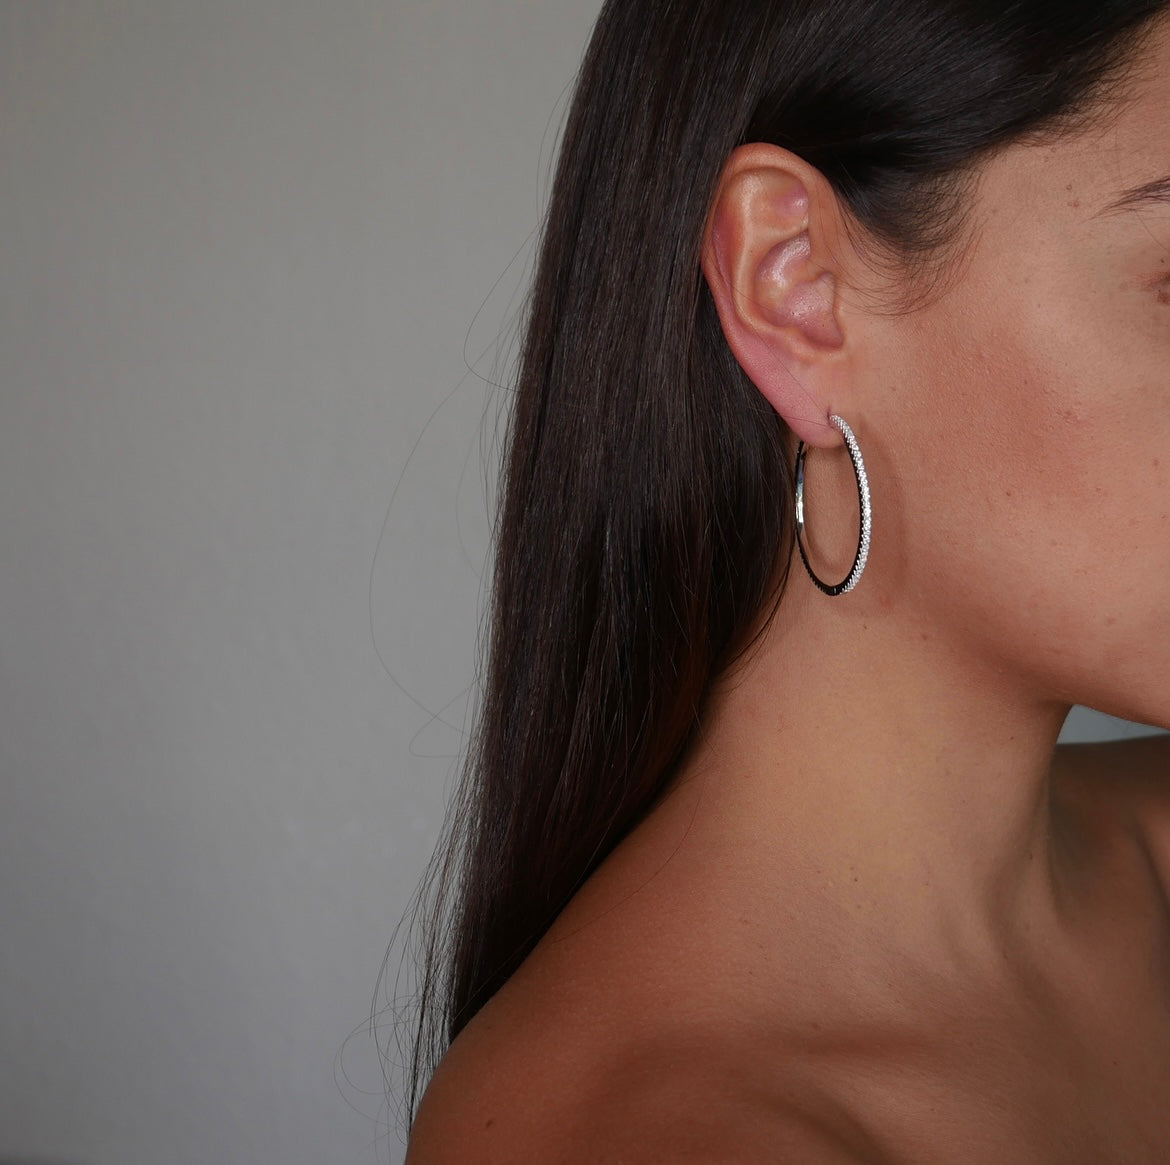 Link earrings, Kesley Boutique, shopping in Brickell, earrings for men, earrings for women, popular earrings, popular link earrings, trendy jewelry, water resistant link earrings, hypoallergenic earrings  